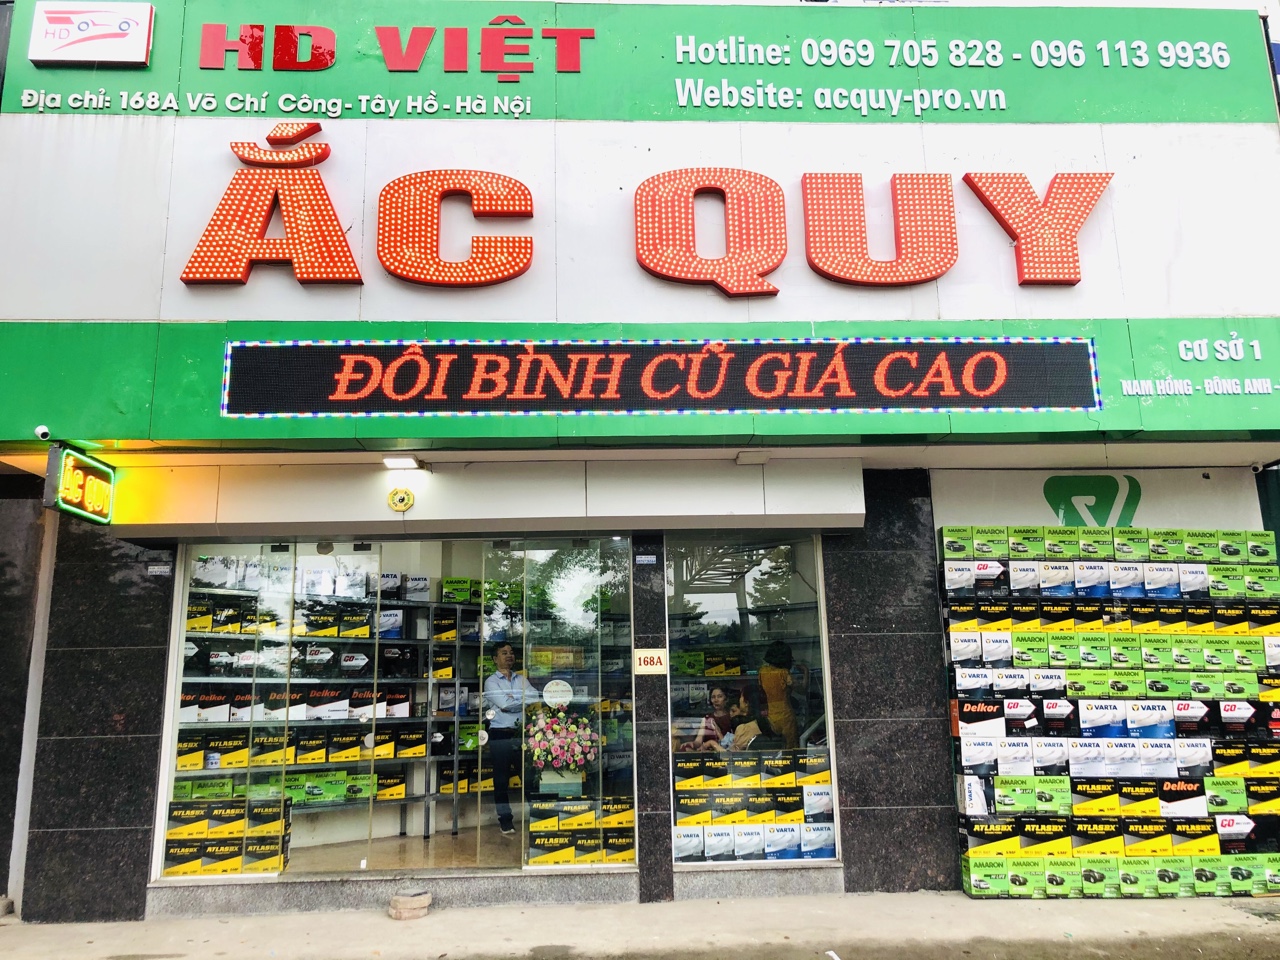 HD Việt - Thay Ắc quy, câu bình ắc quy tận nhà tại KDT D'capitale Trần Duy Hưng, Cầu Giấy